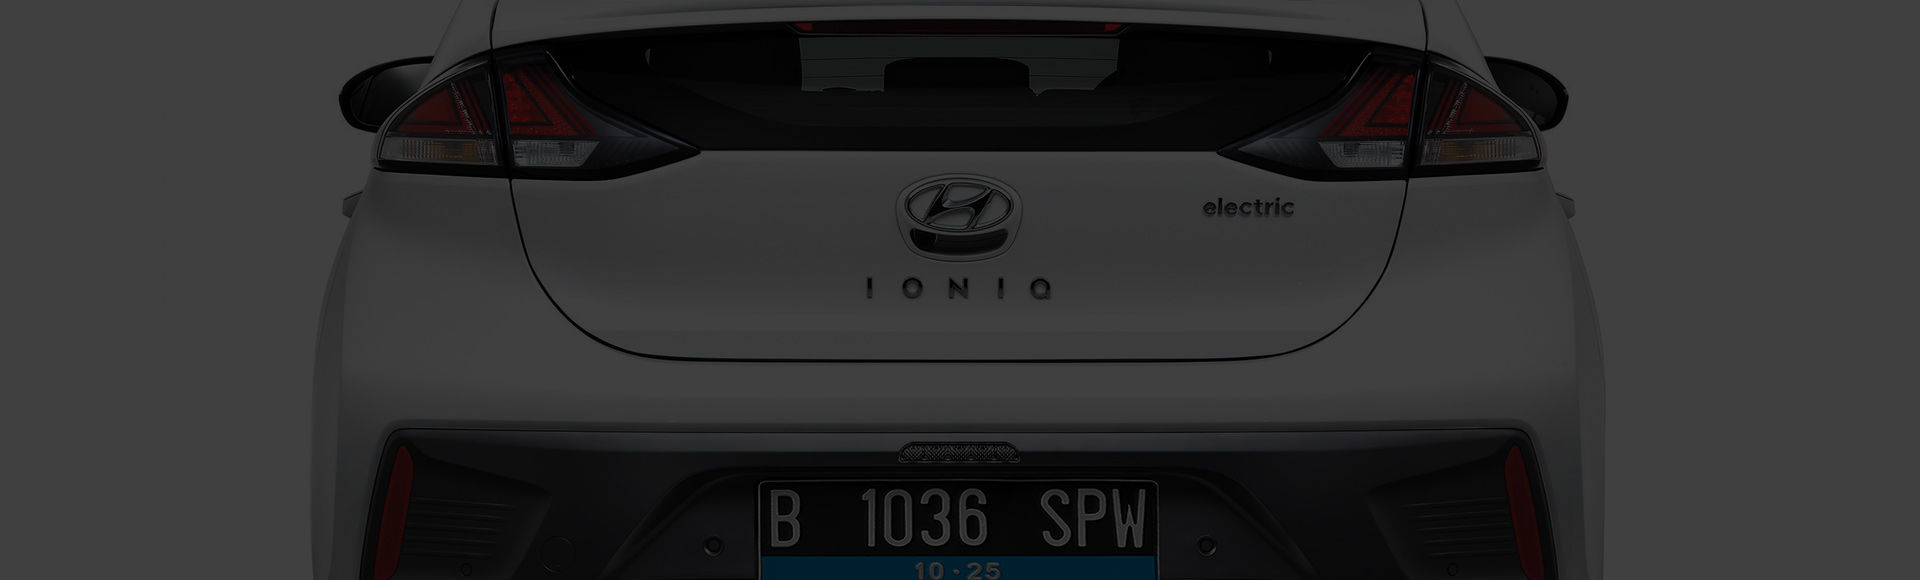 Desain tampak belakang IONIQ electric